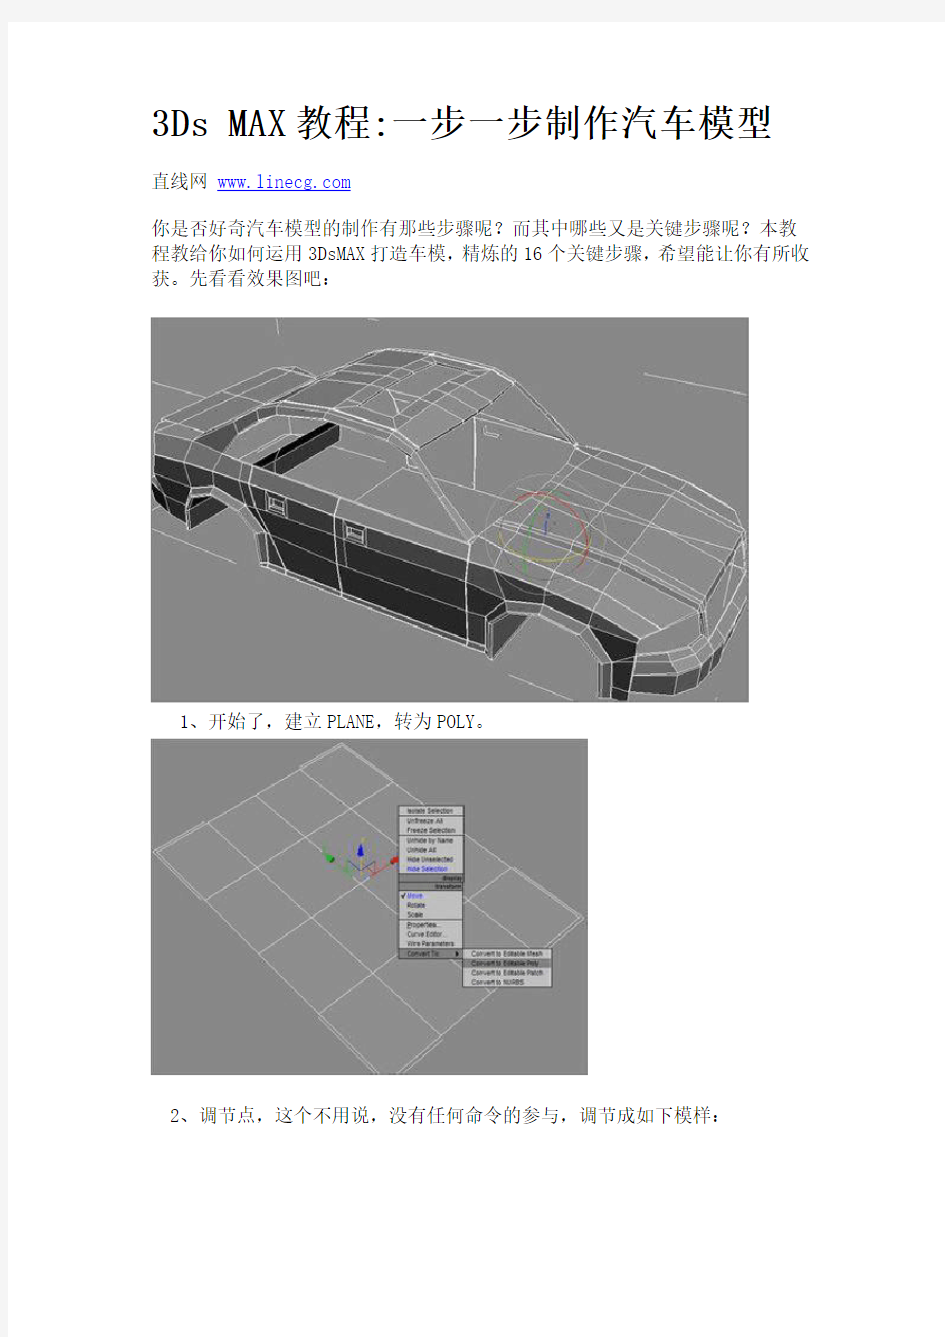 3Ds MAX教程一步一步制作汽车模型